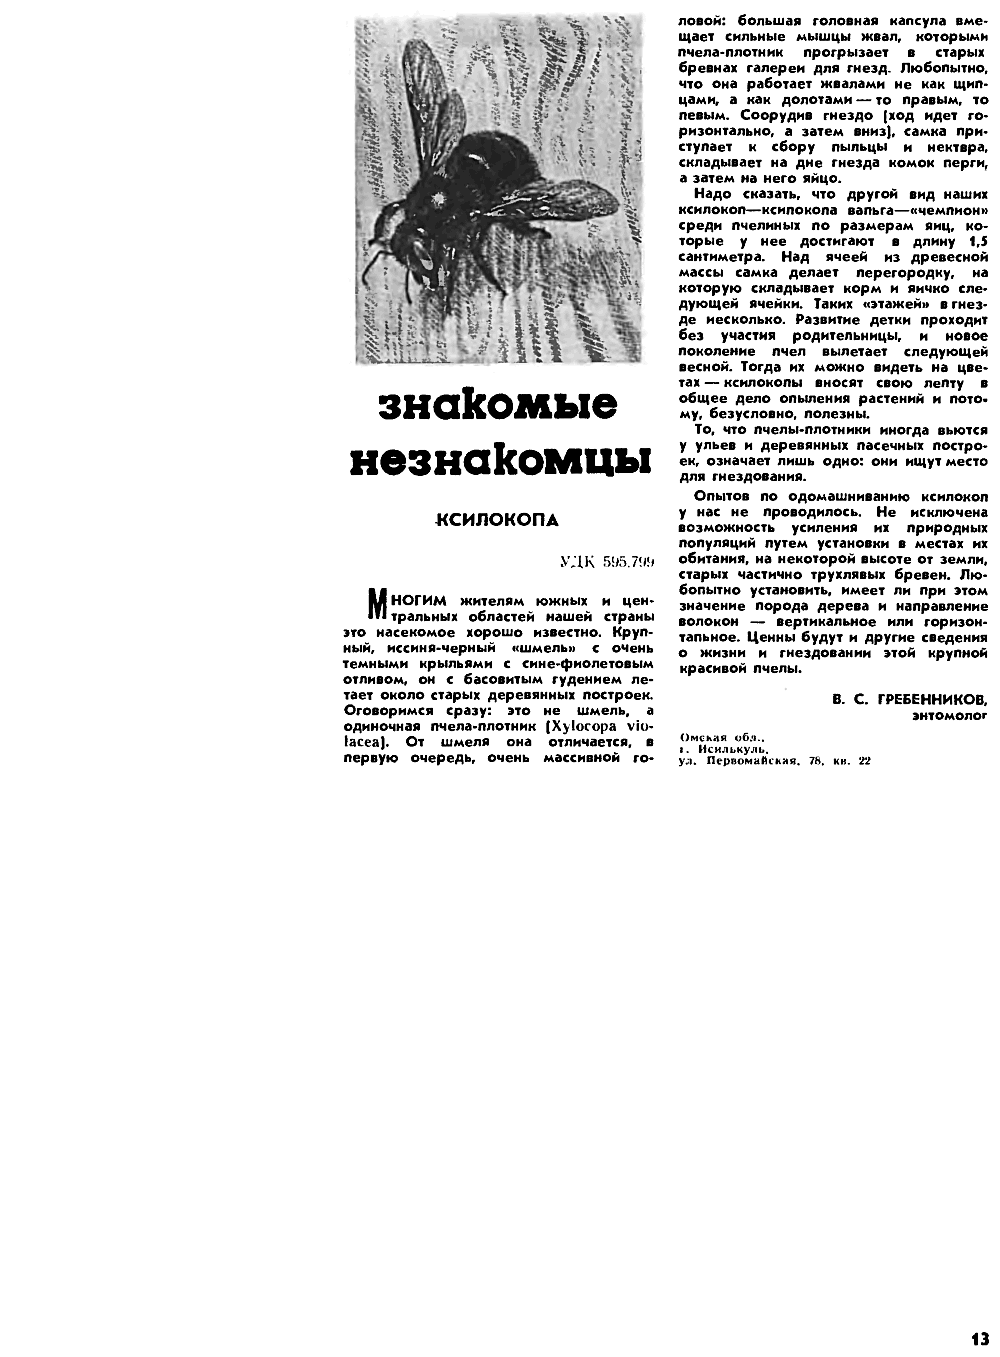 Знакомые незнакомцы. Ксилопа. В.С. Гребенников. Пчеловодство, 1971, №10, с.13